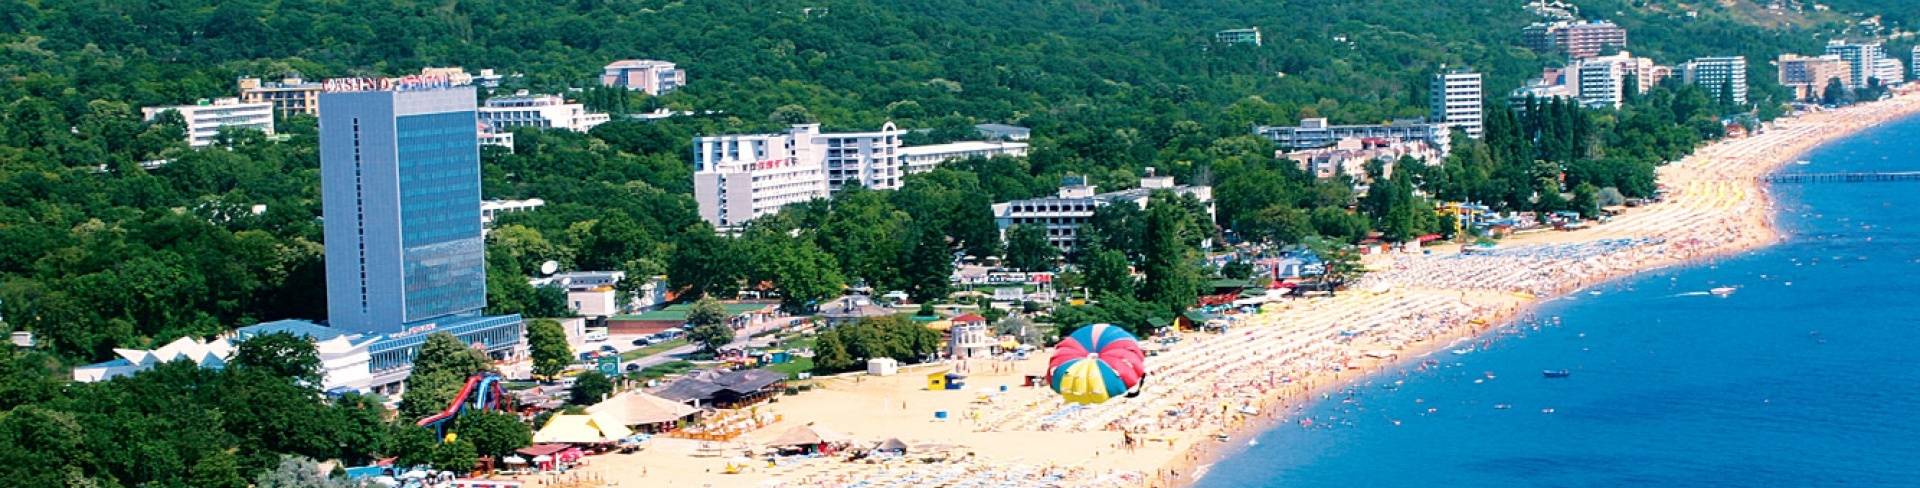 Золотые пески - пляжный курорт в Болгарии